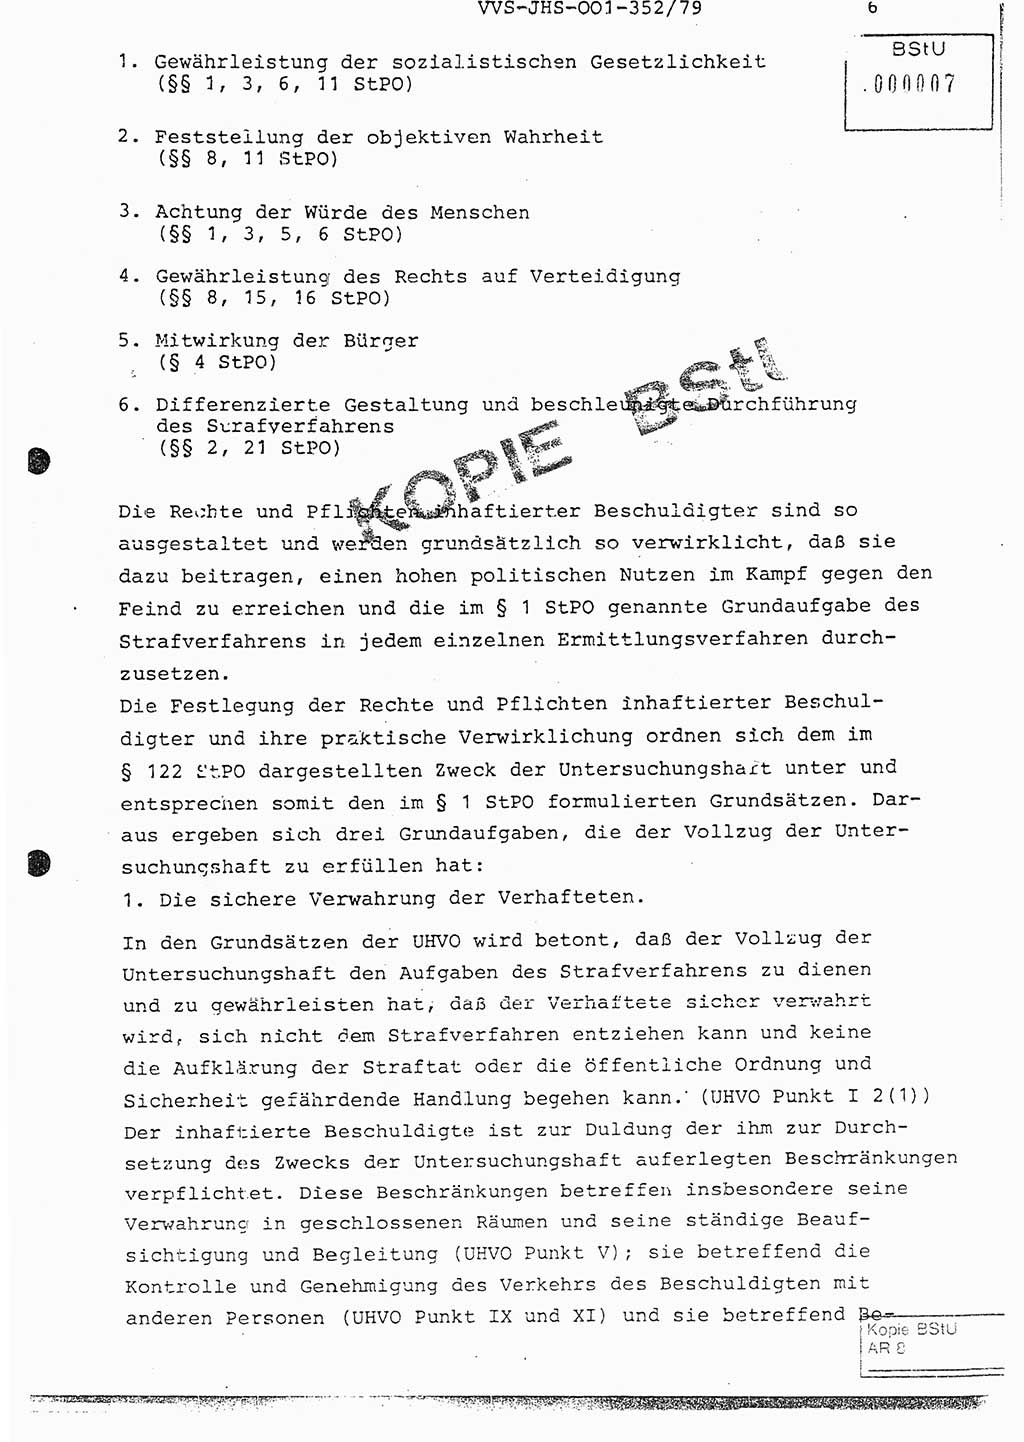 Diplomarbeit Hauptmann Peter Wittum (BV Bln. Abt. HA Ⅸ), Ministerium für Staatssicherheit (MfS) [Deutsche Demokratische Republik (DDR)], Juristische Hochschule (JHS), Vertrauliche Verschlußsache (VVS) o001-352/79, Potsdam 1979, Seite 6 (Dipl.-Arb. MfS DDR JHS VVS o001-352/79 1979, S. 6)